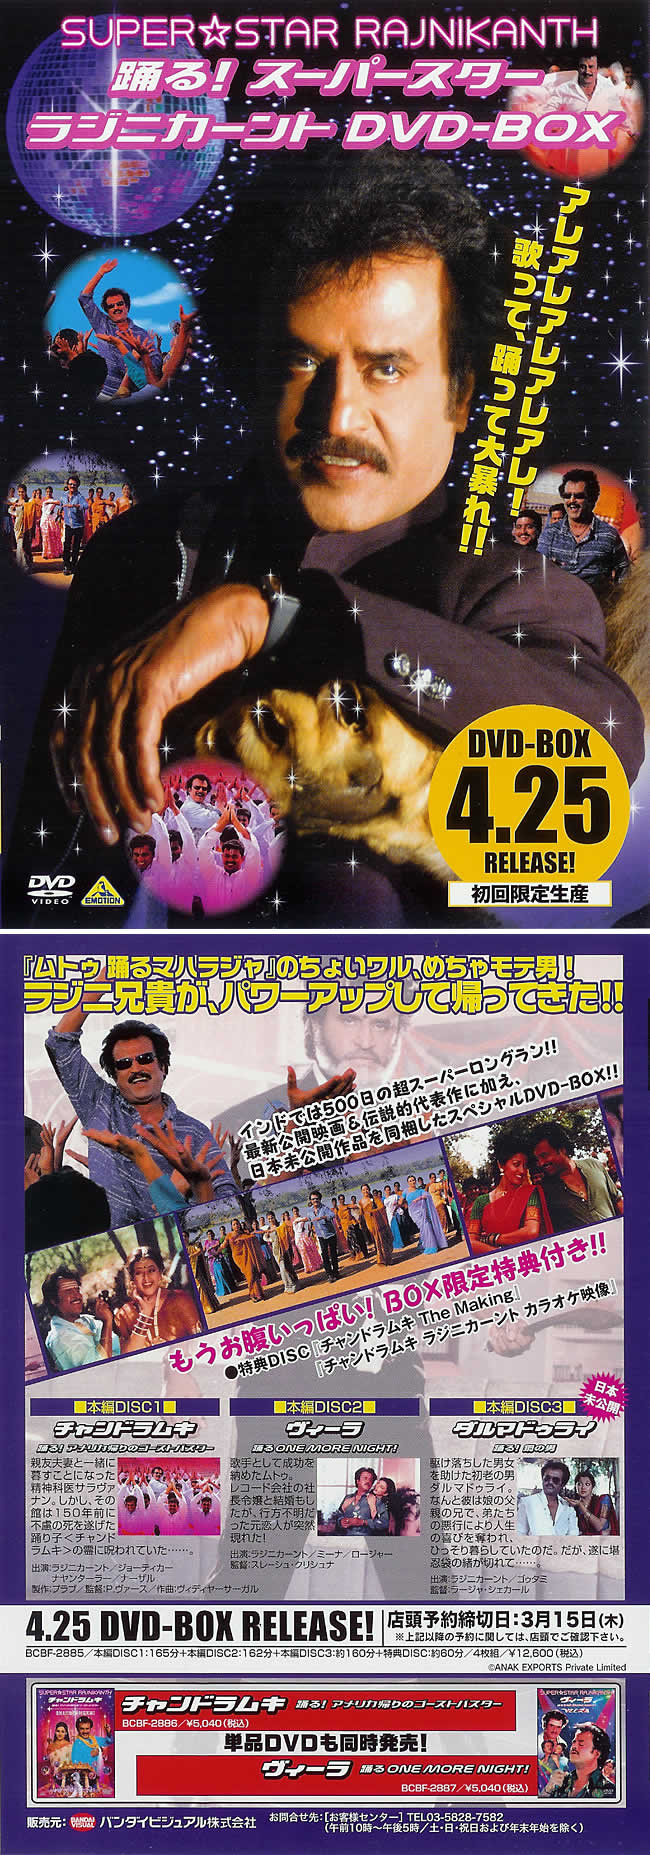 踊る スーパースターラジニカーント Dvd Box の通販 送料無料 Tirakita Com